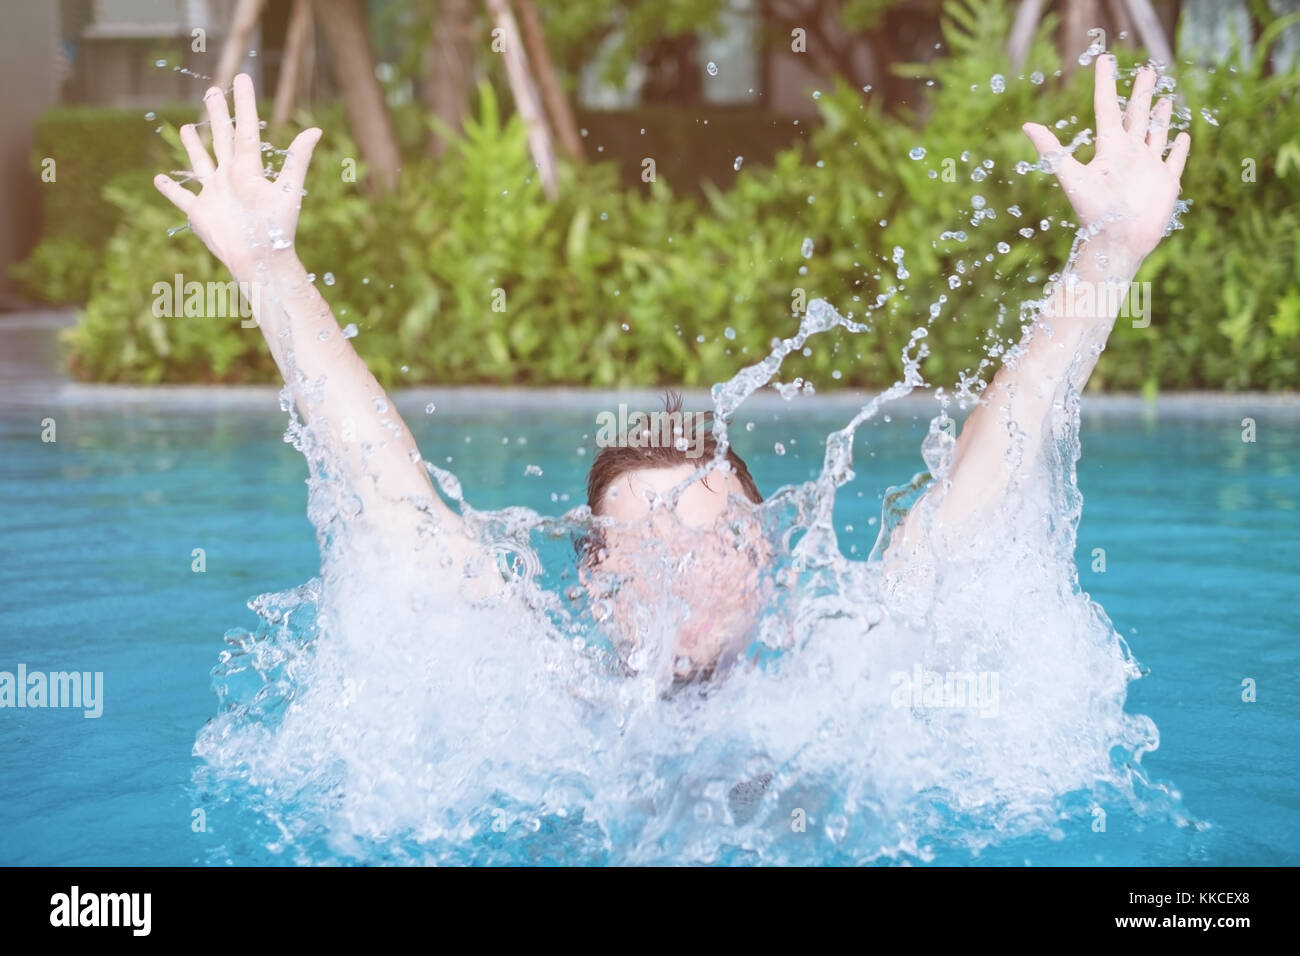 Der Mensch ist Schwimmen und Spielen im Pool mit Spray. Stockfoto